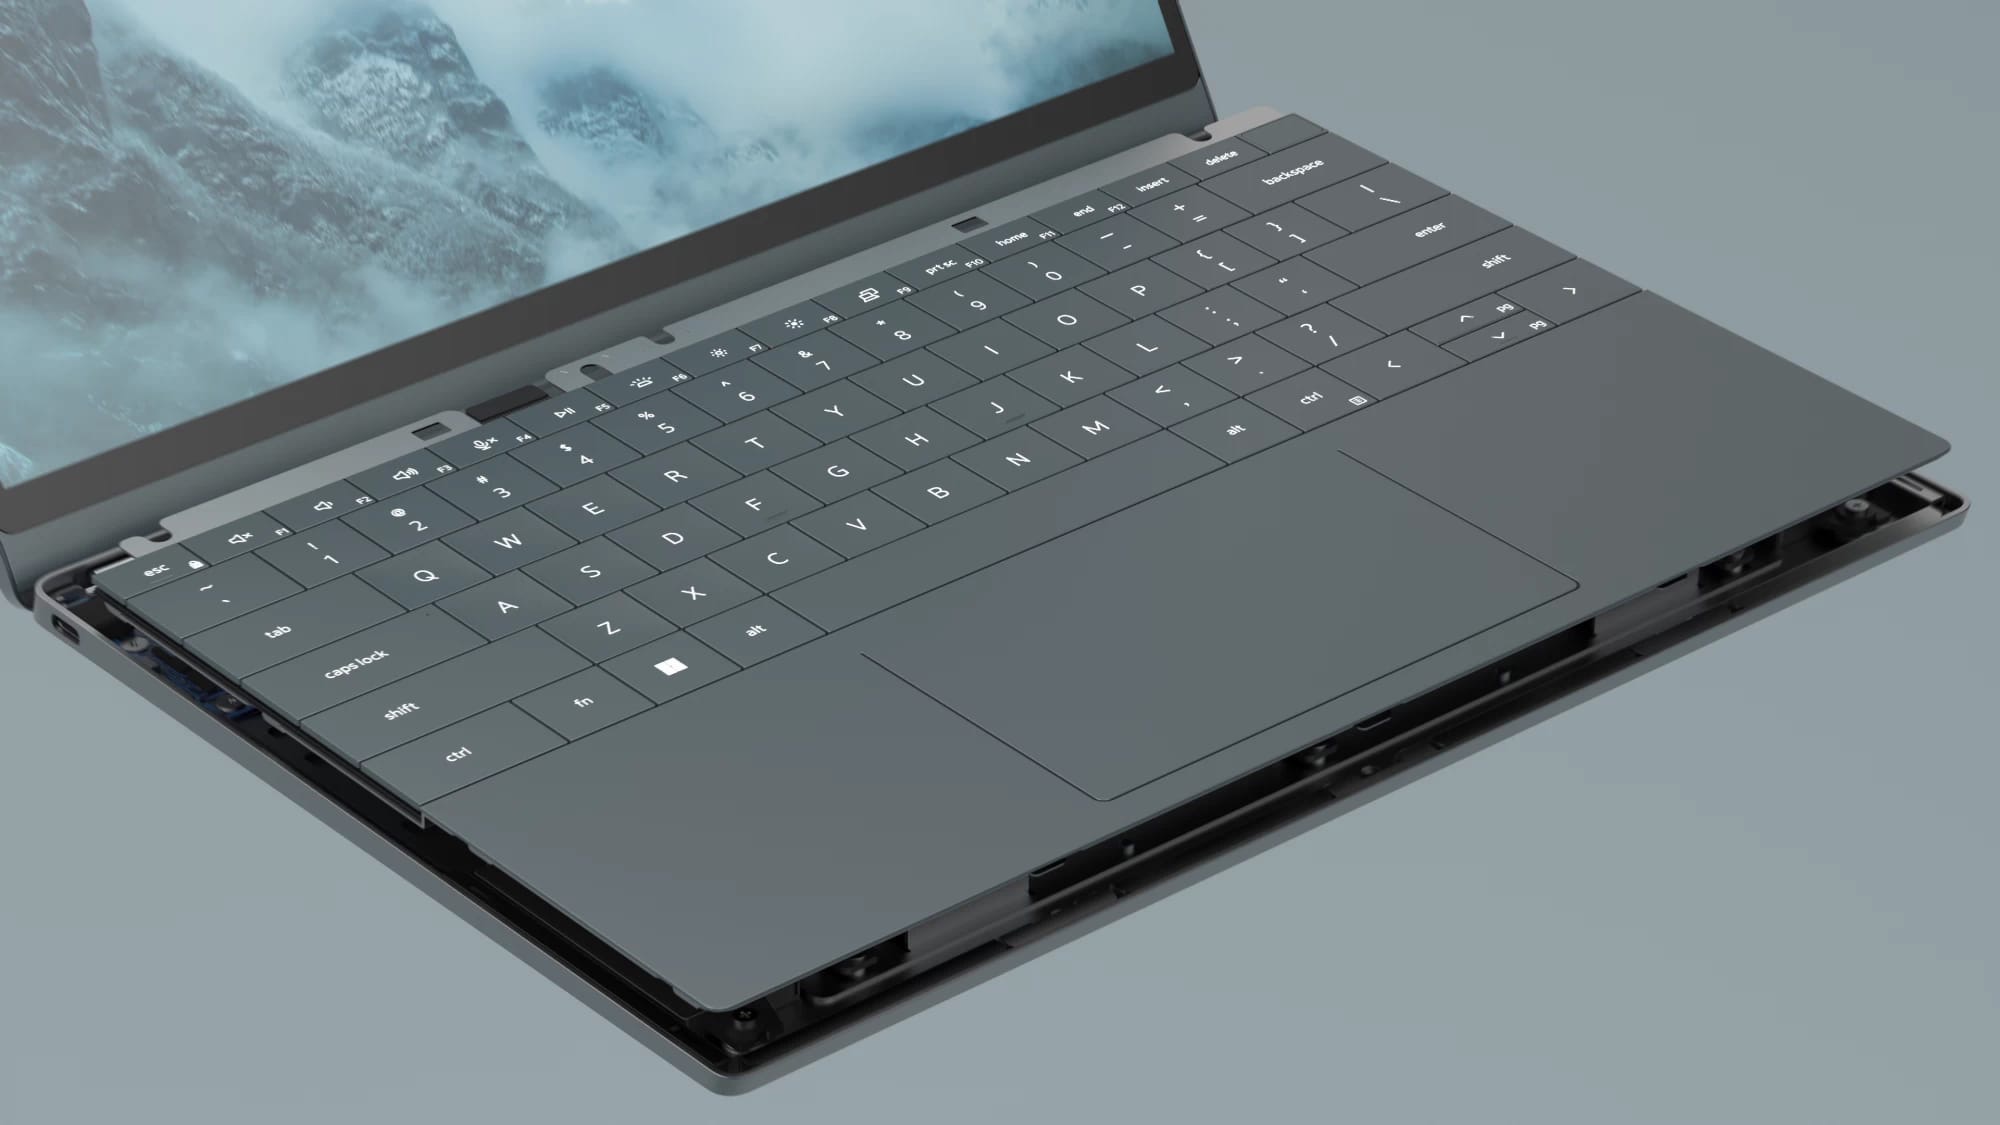 Компания Dell представила концепт легко разбираемого и собираемого ноутбука - Luna.